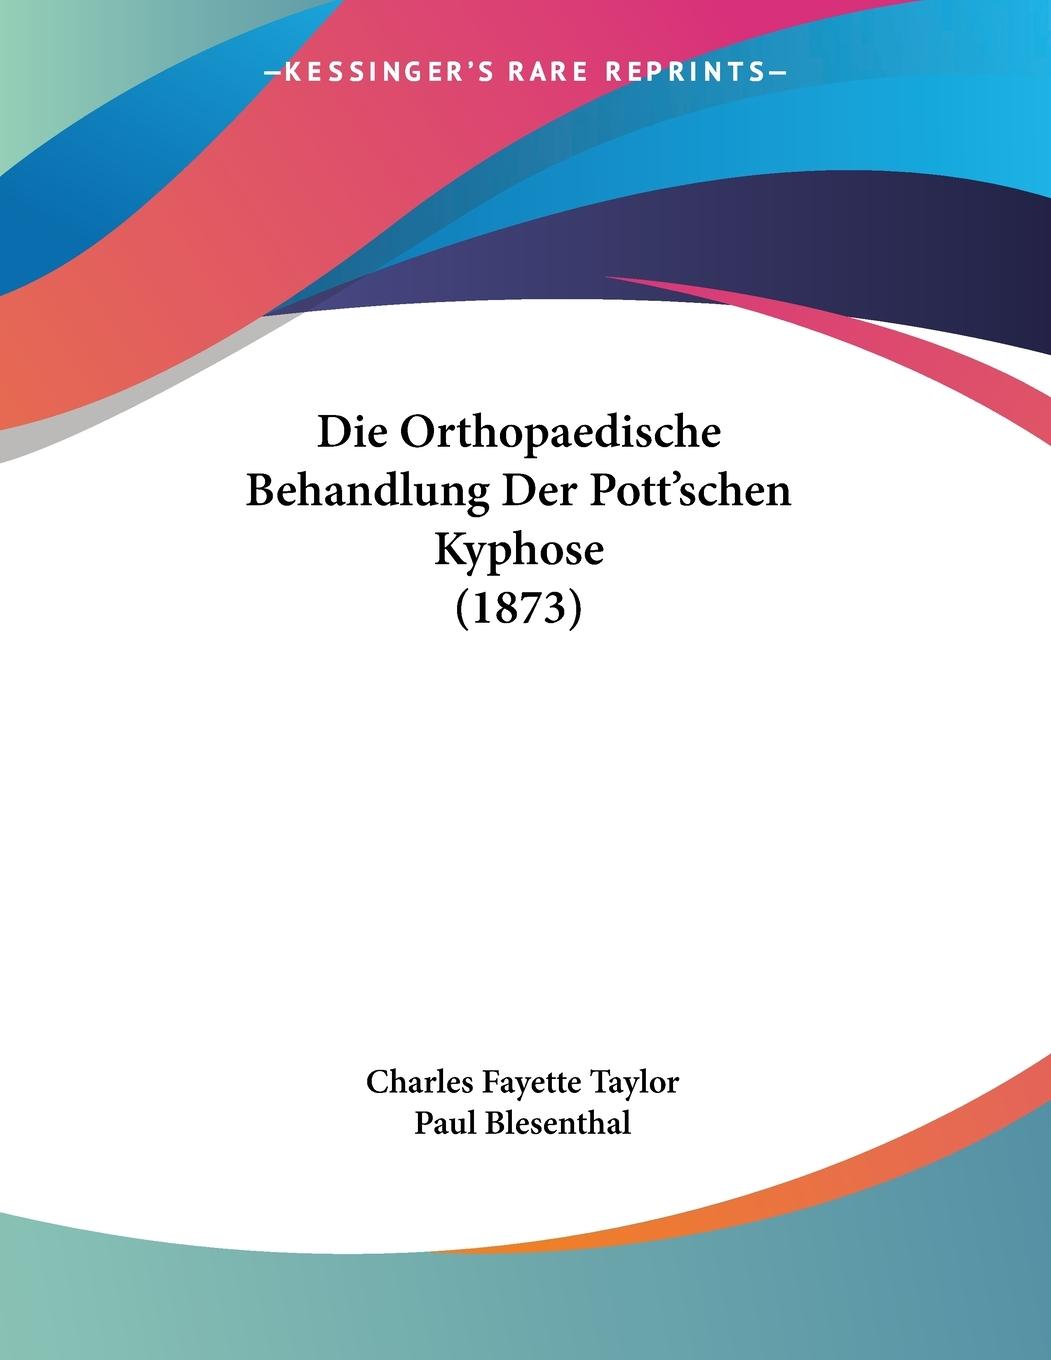 Die Orthopaedische Behandlung Der Pott schen Kyphose (1873) - Taylor, Charles Fayette